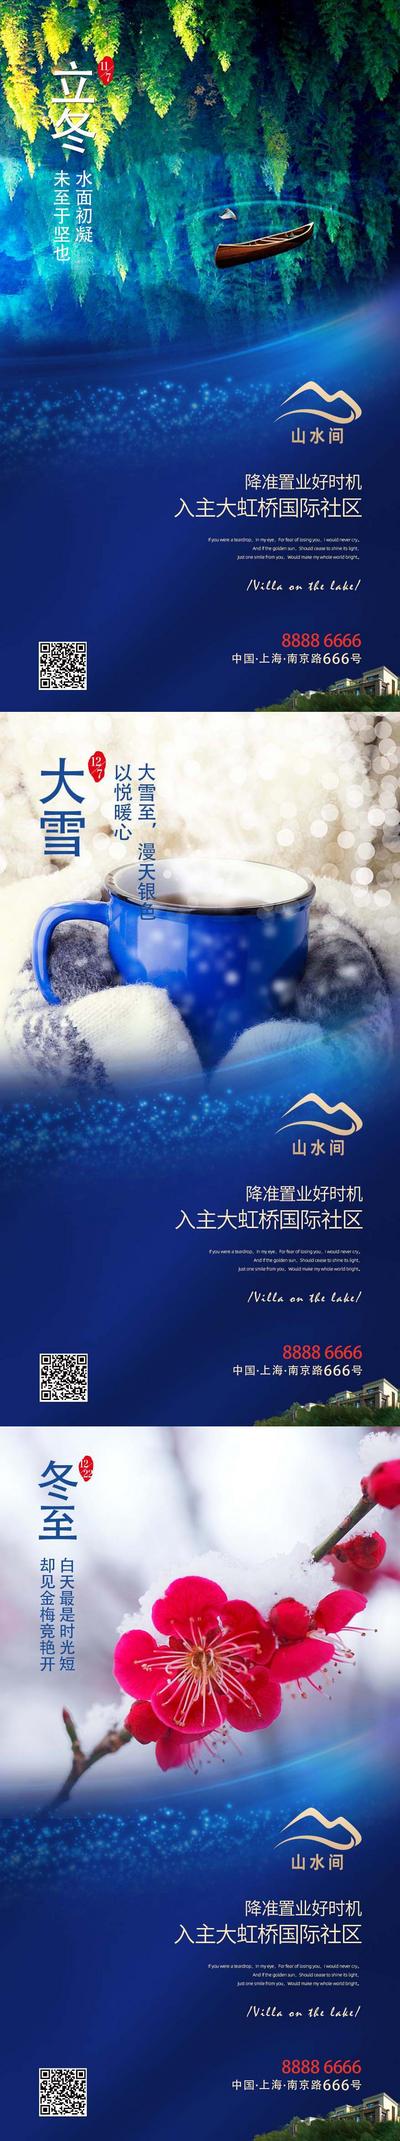 南门网 海报 房地产 二十四节气 立冬 冬至 大雪 树林 咖啡 花 系列